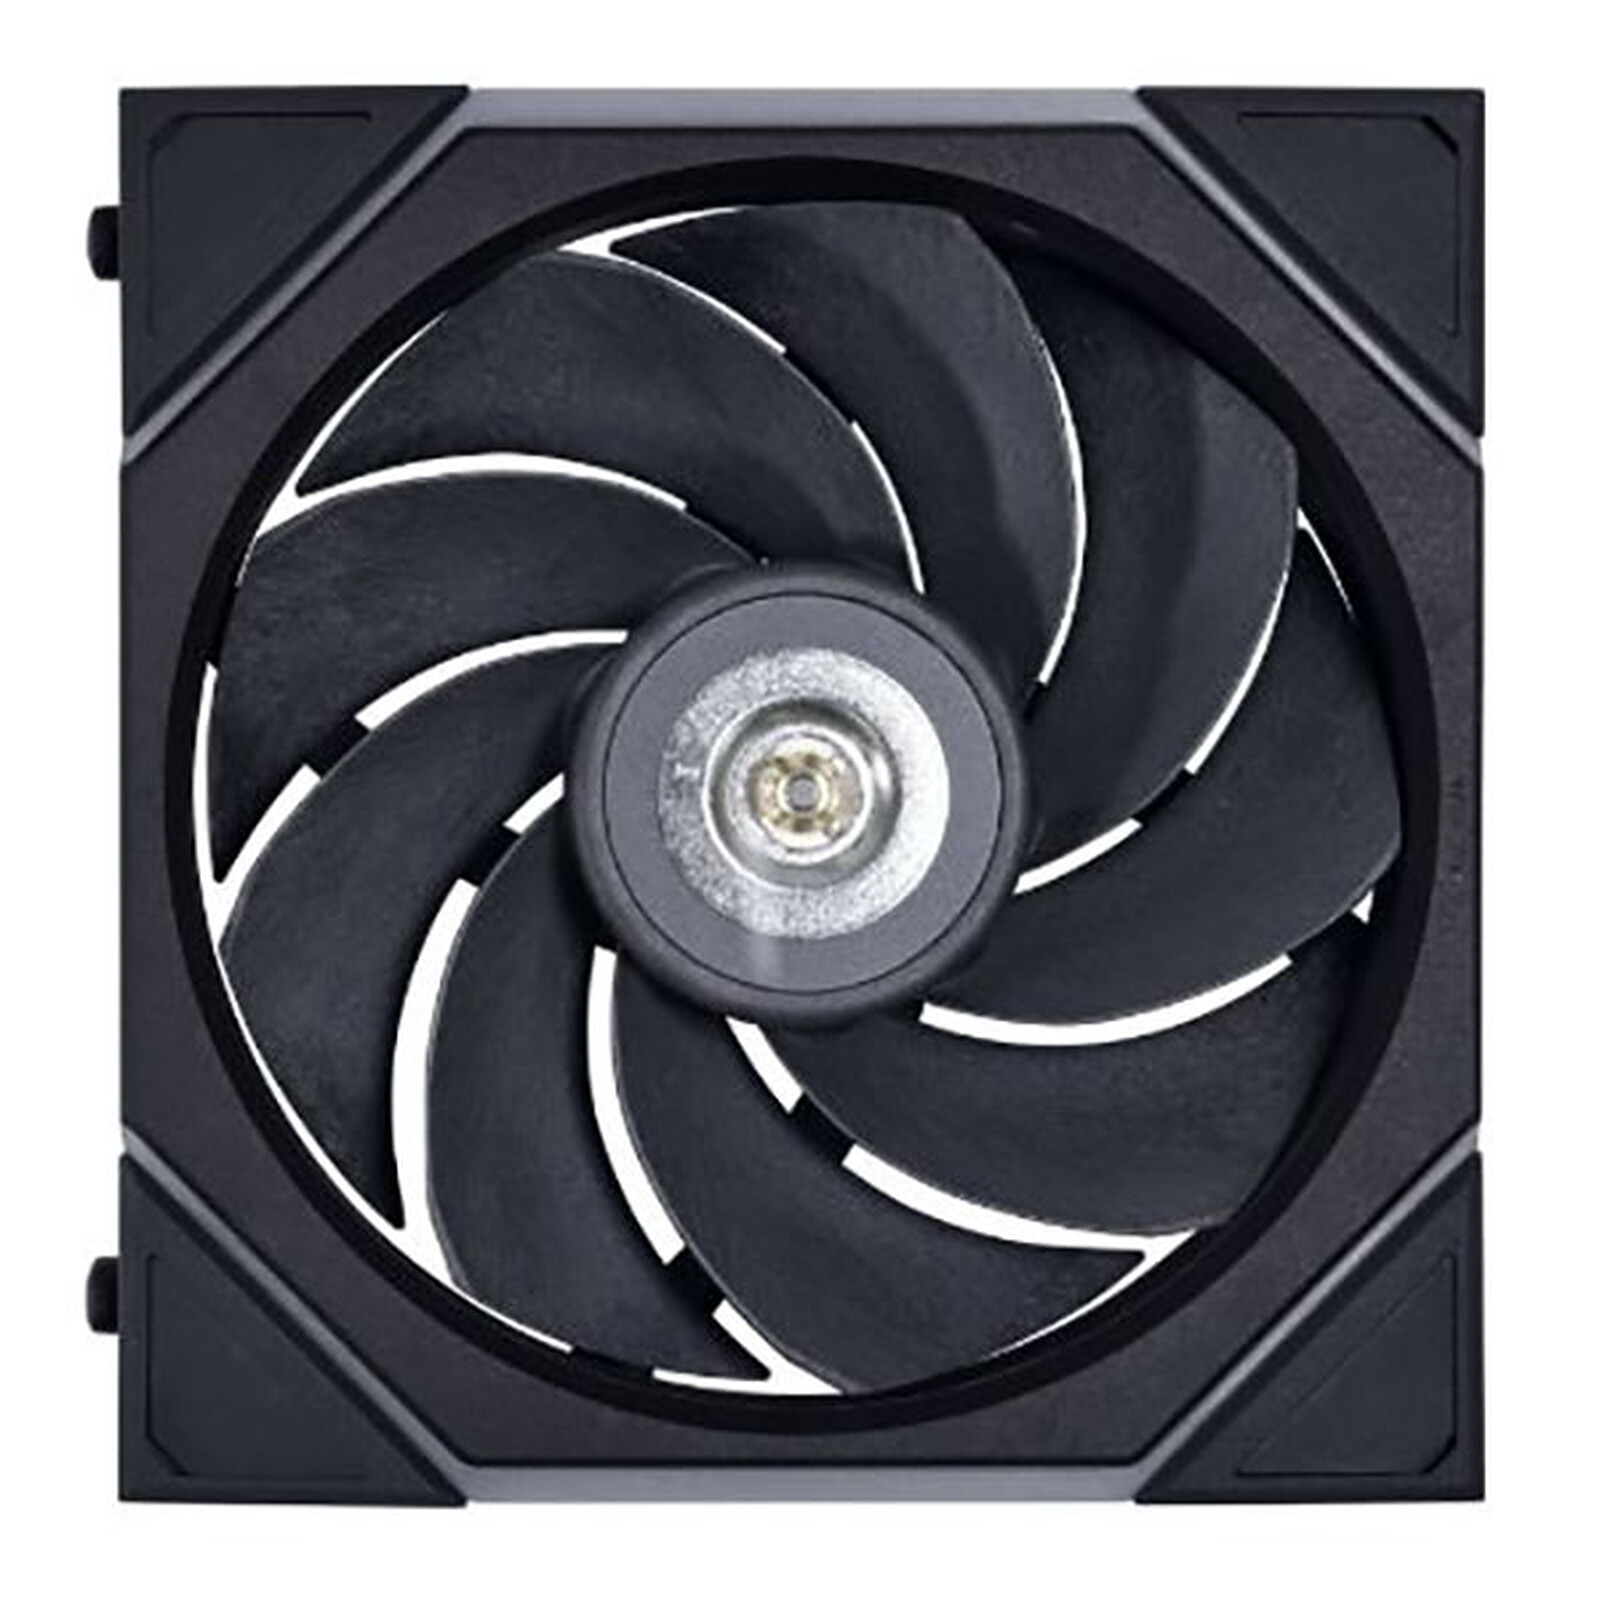 Razer PWM PC Fan Controller - Ventilateur boîtier - Garantie 3 ans LDLC